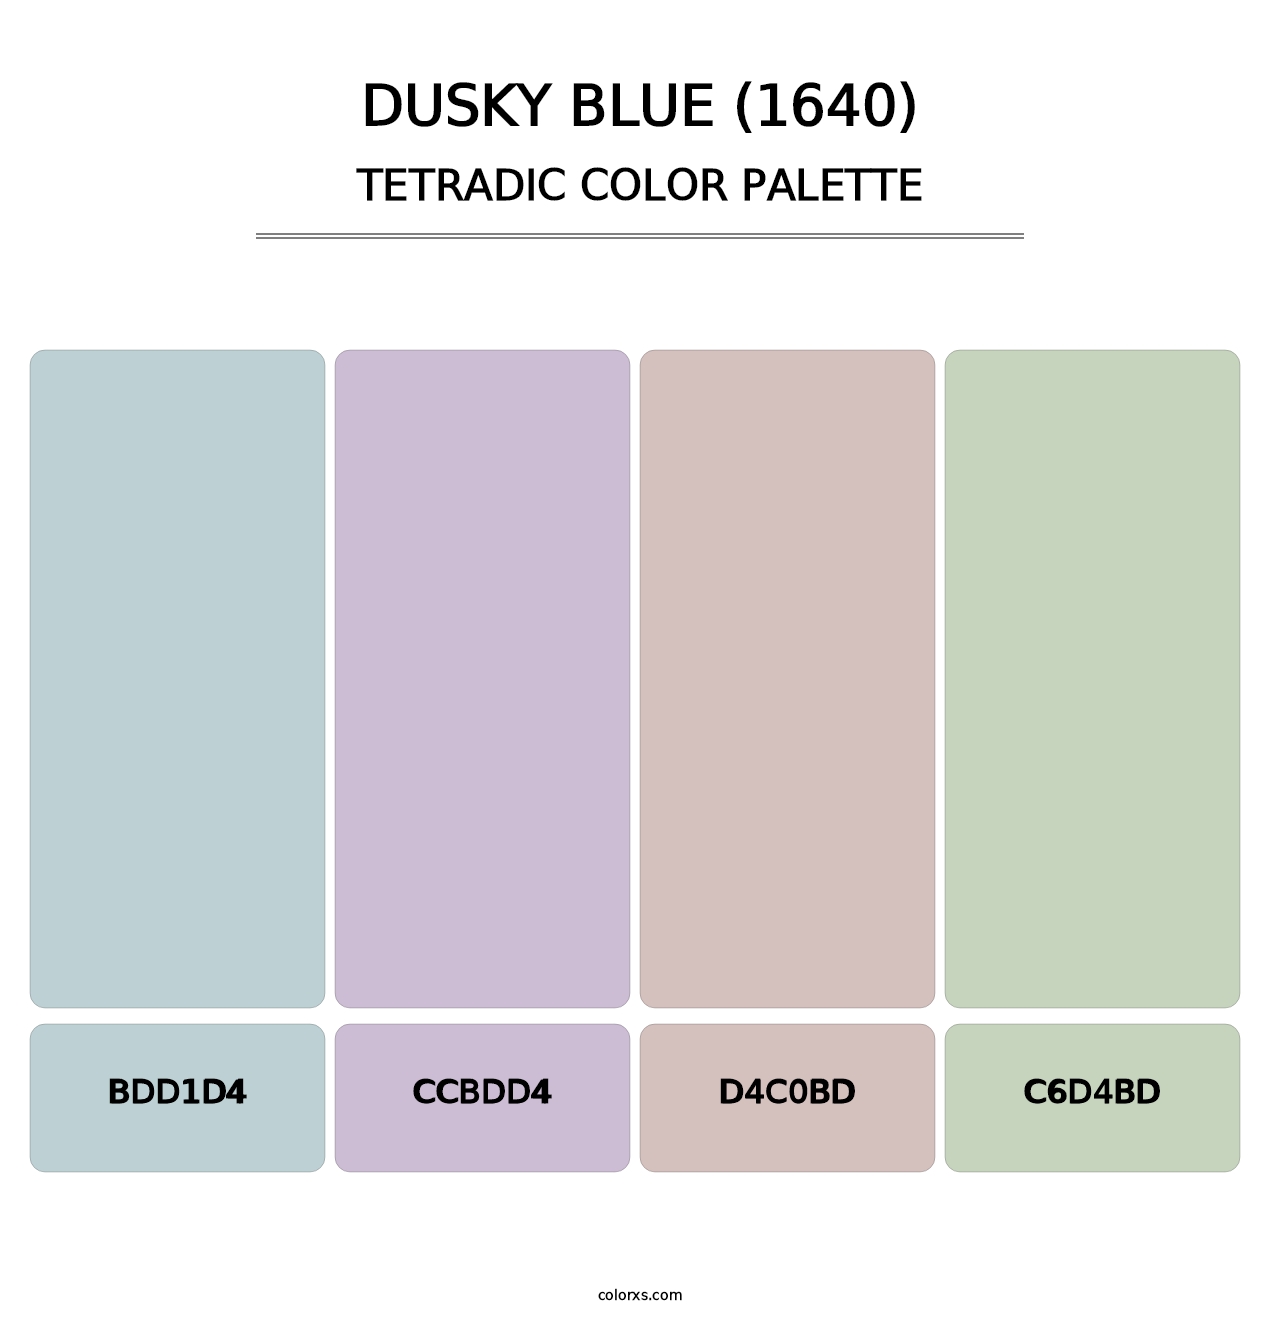 Dusky Blue (1640) - Tetradic Color Palette